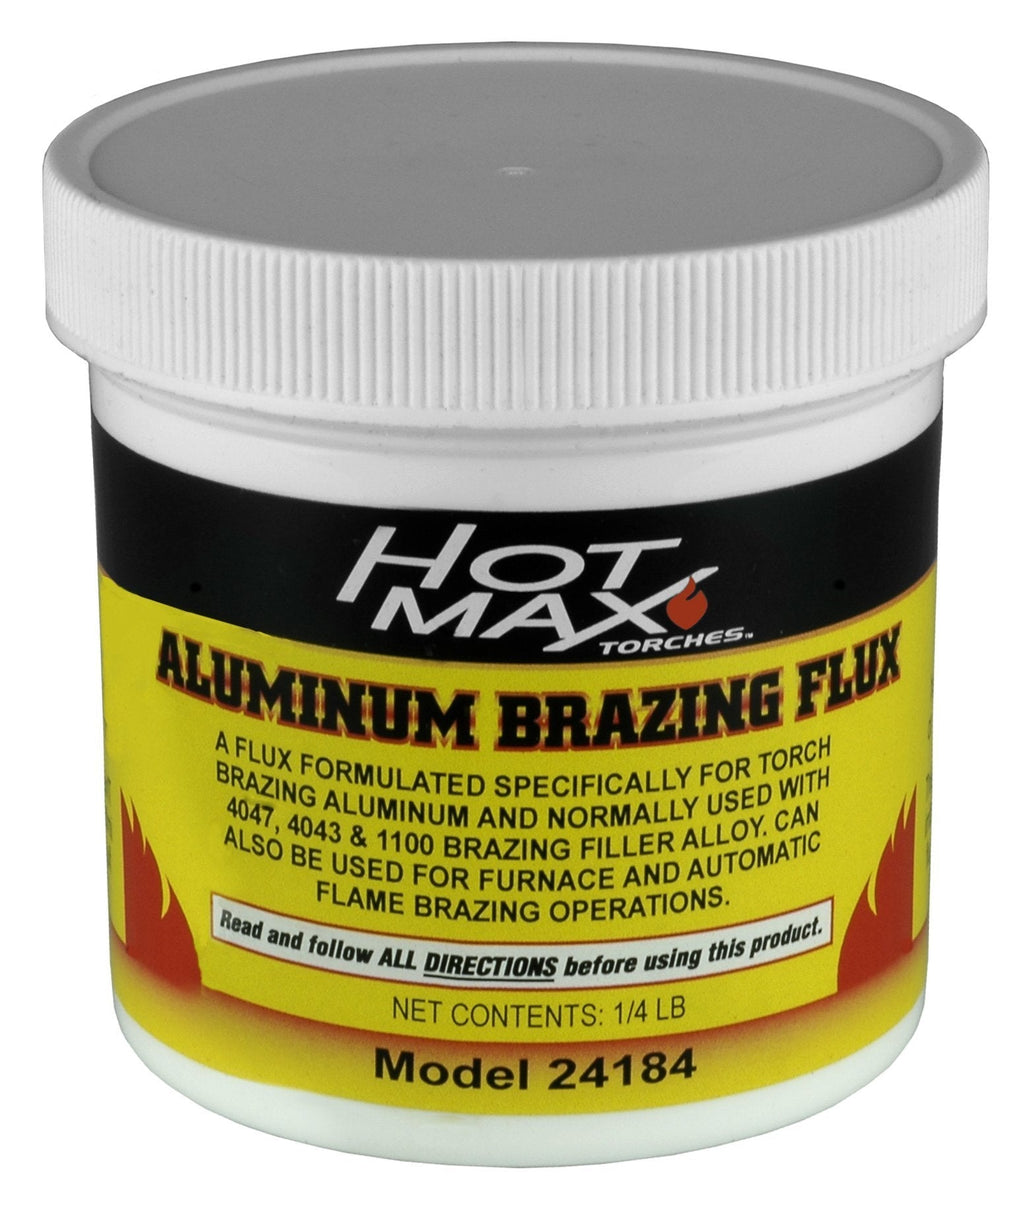  [AUSTRALIA] - Hot Max 24184 Aluminum Brazing Flux for Welding